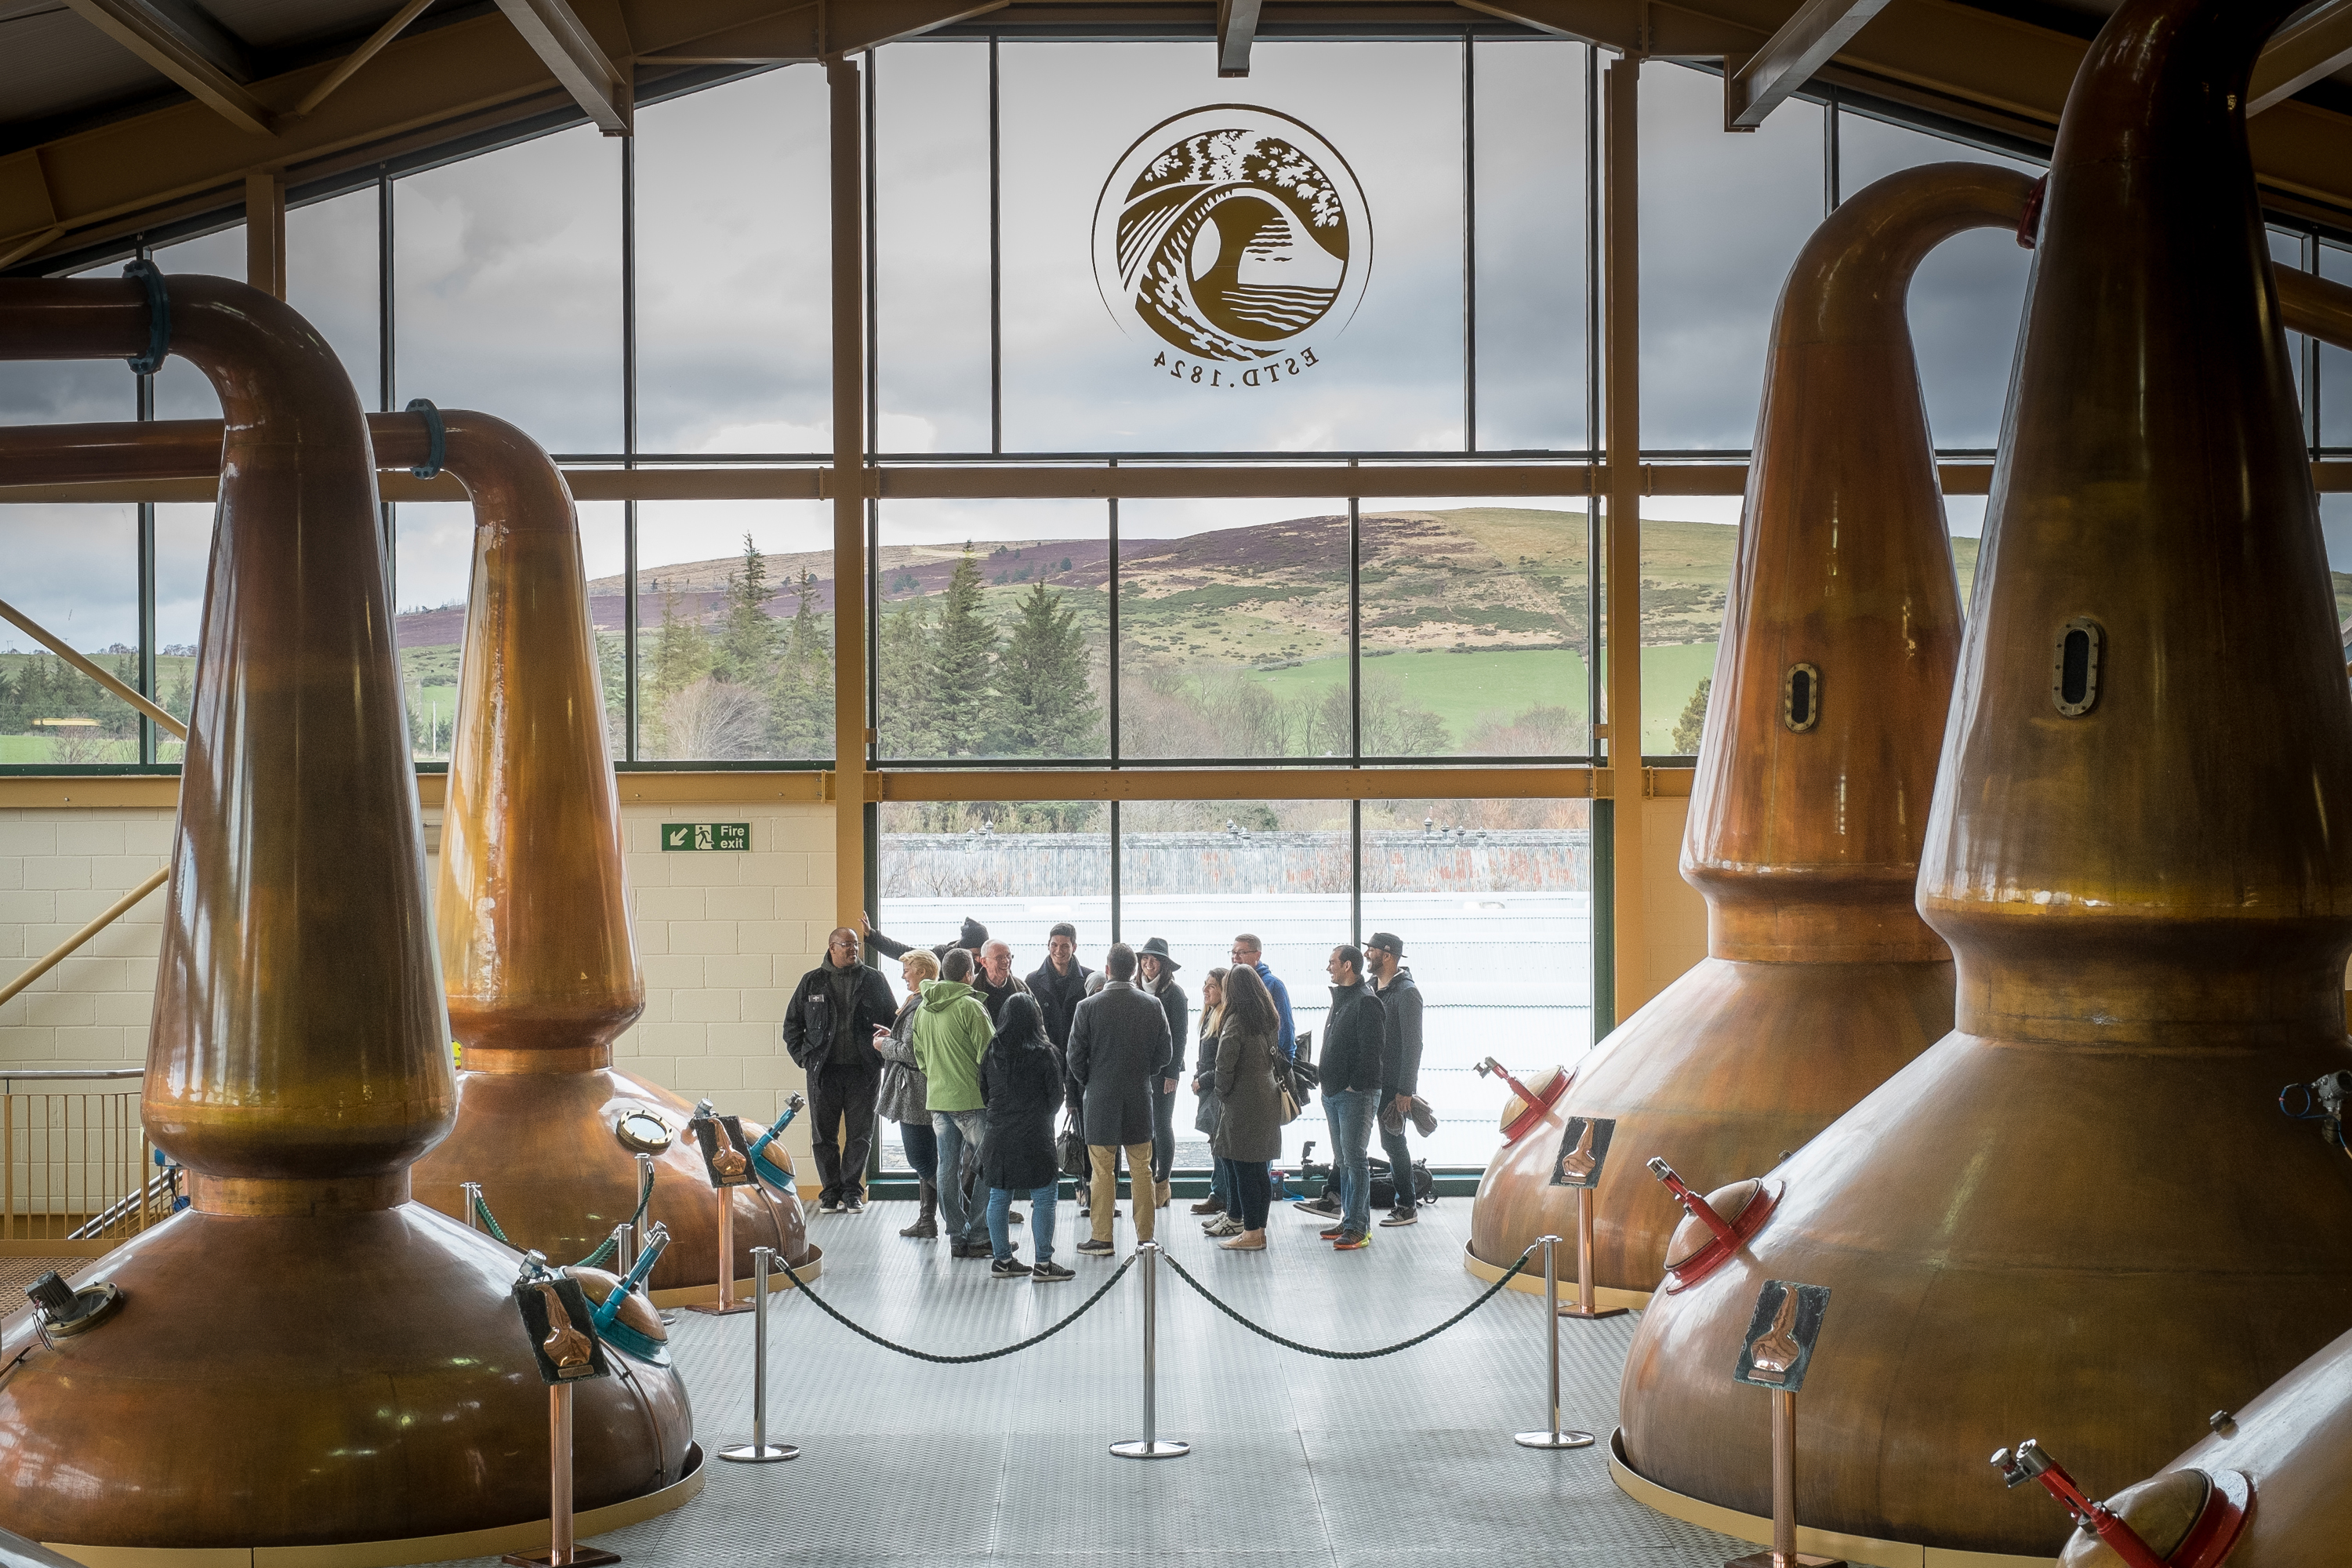 visit scotland distilleries